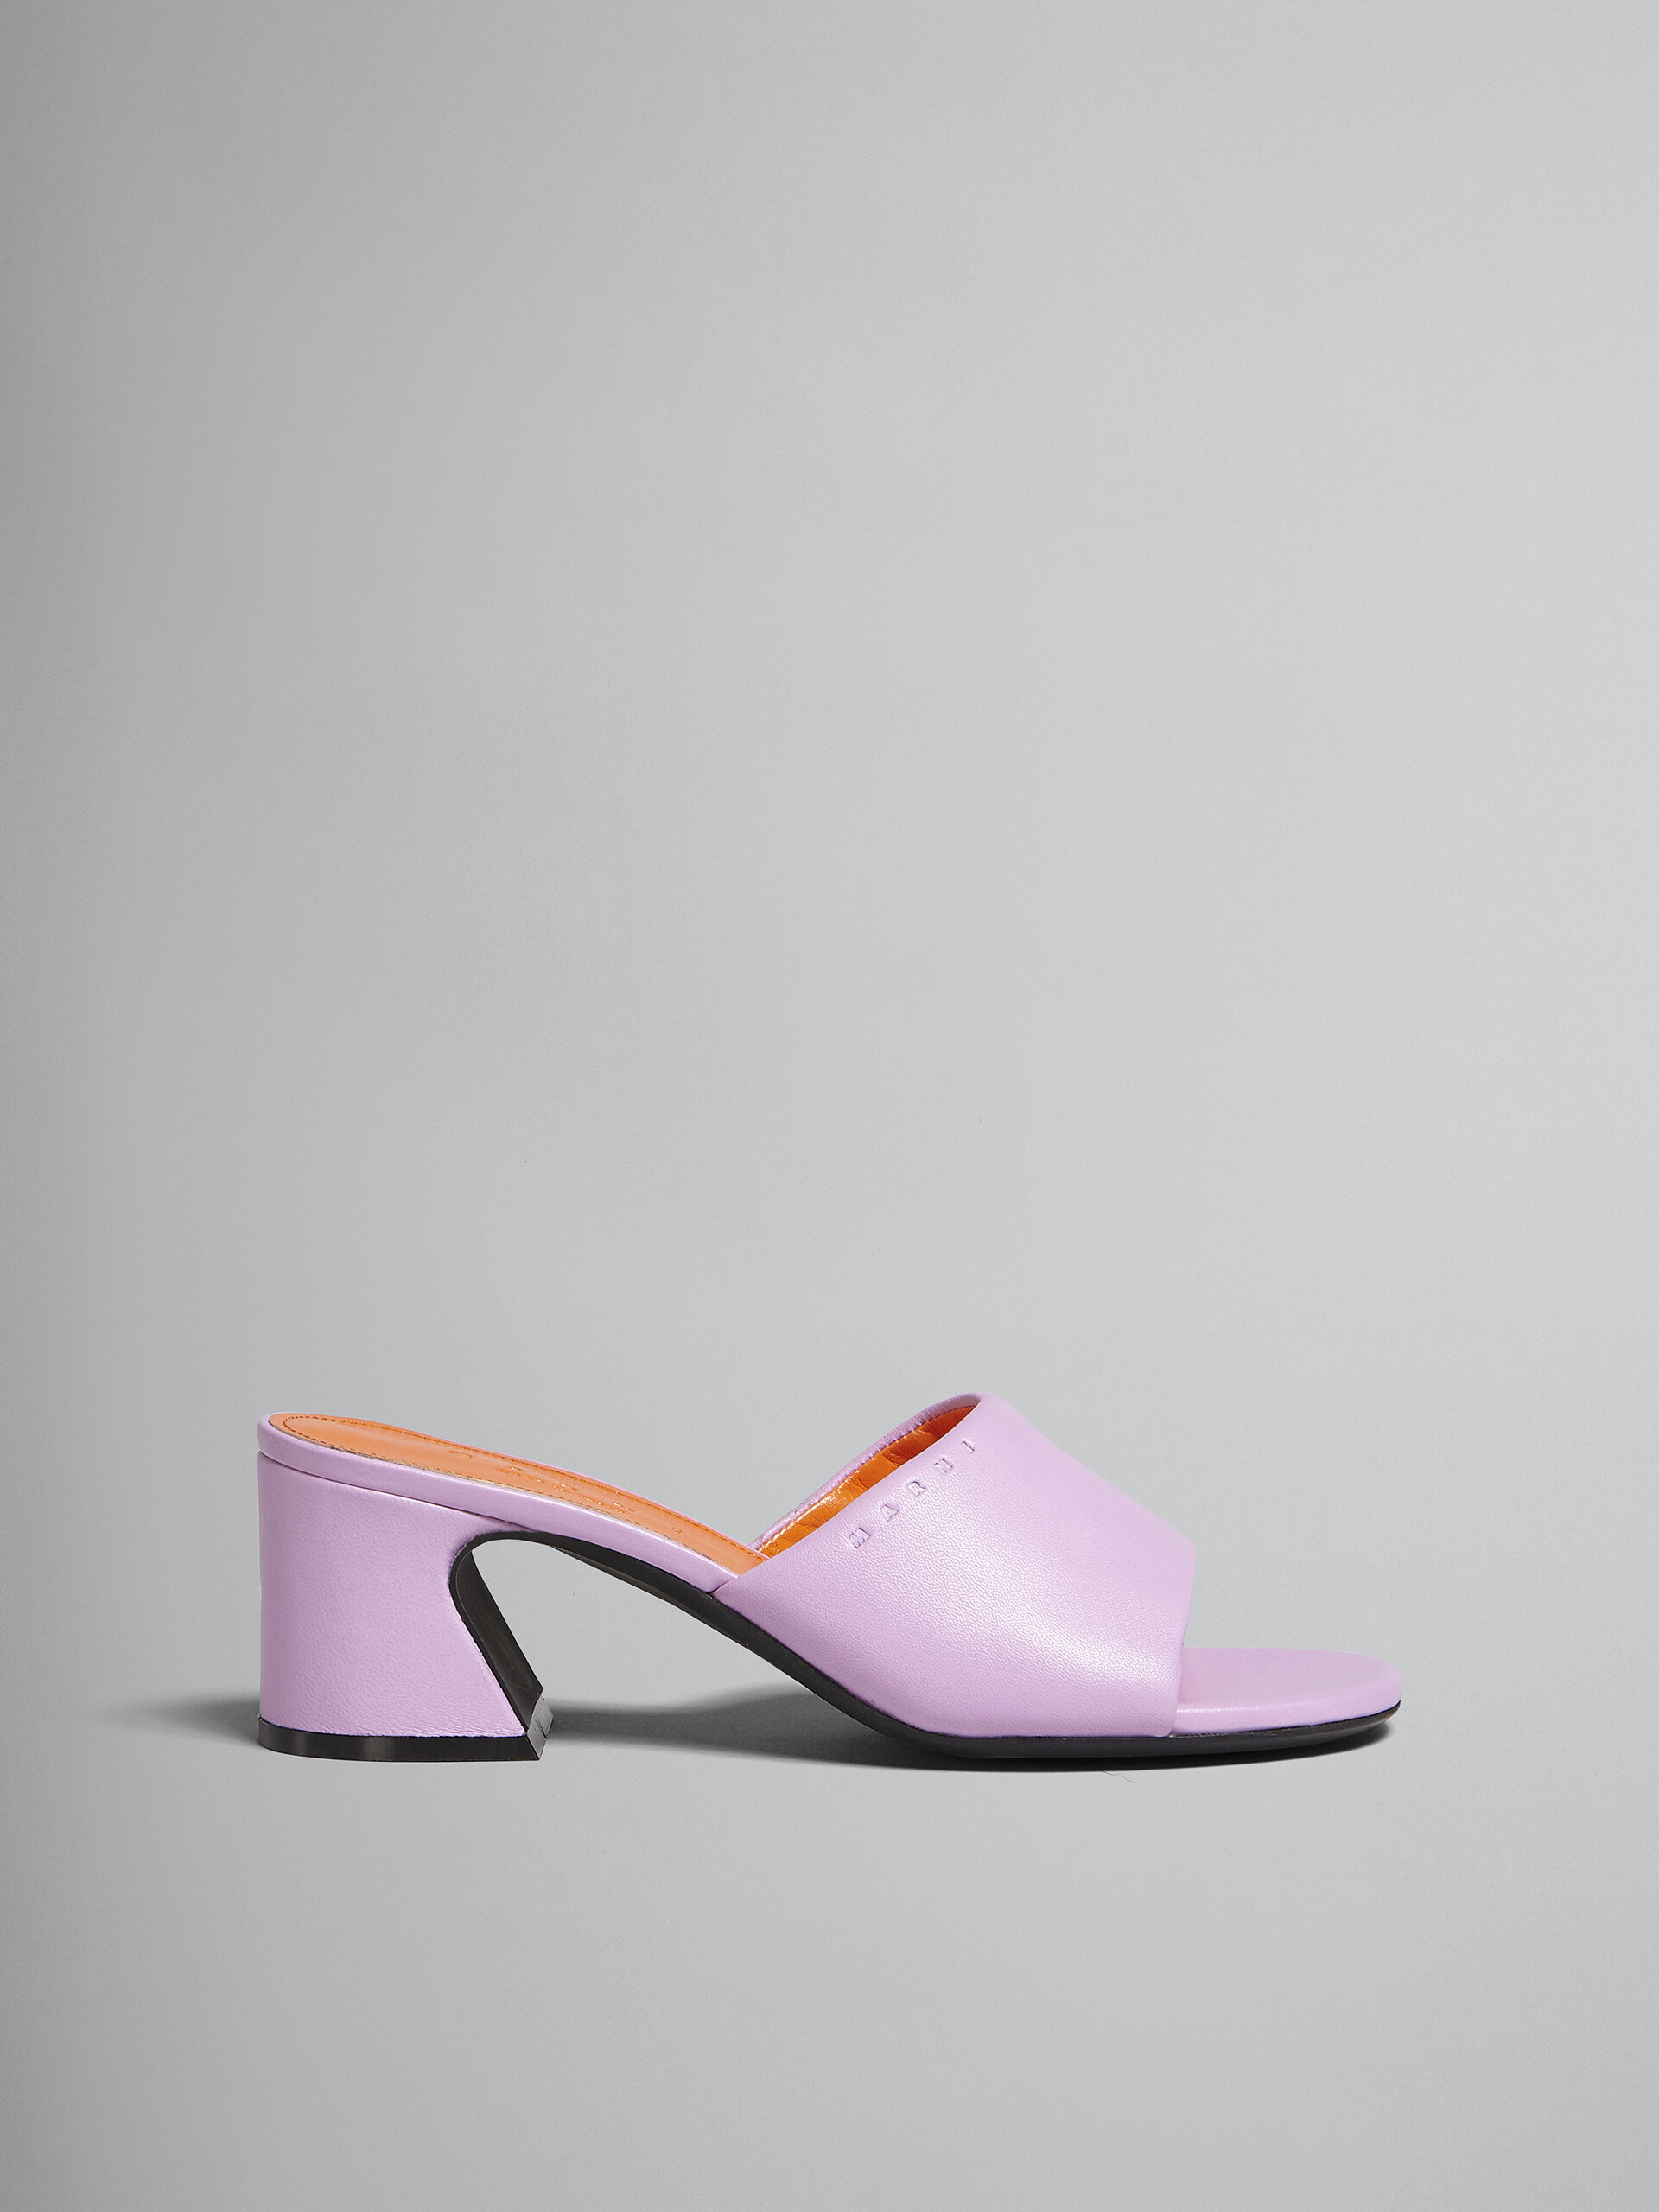 핑크 가죽 샌들 - Sandals - Image 1